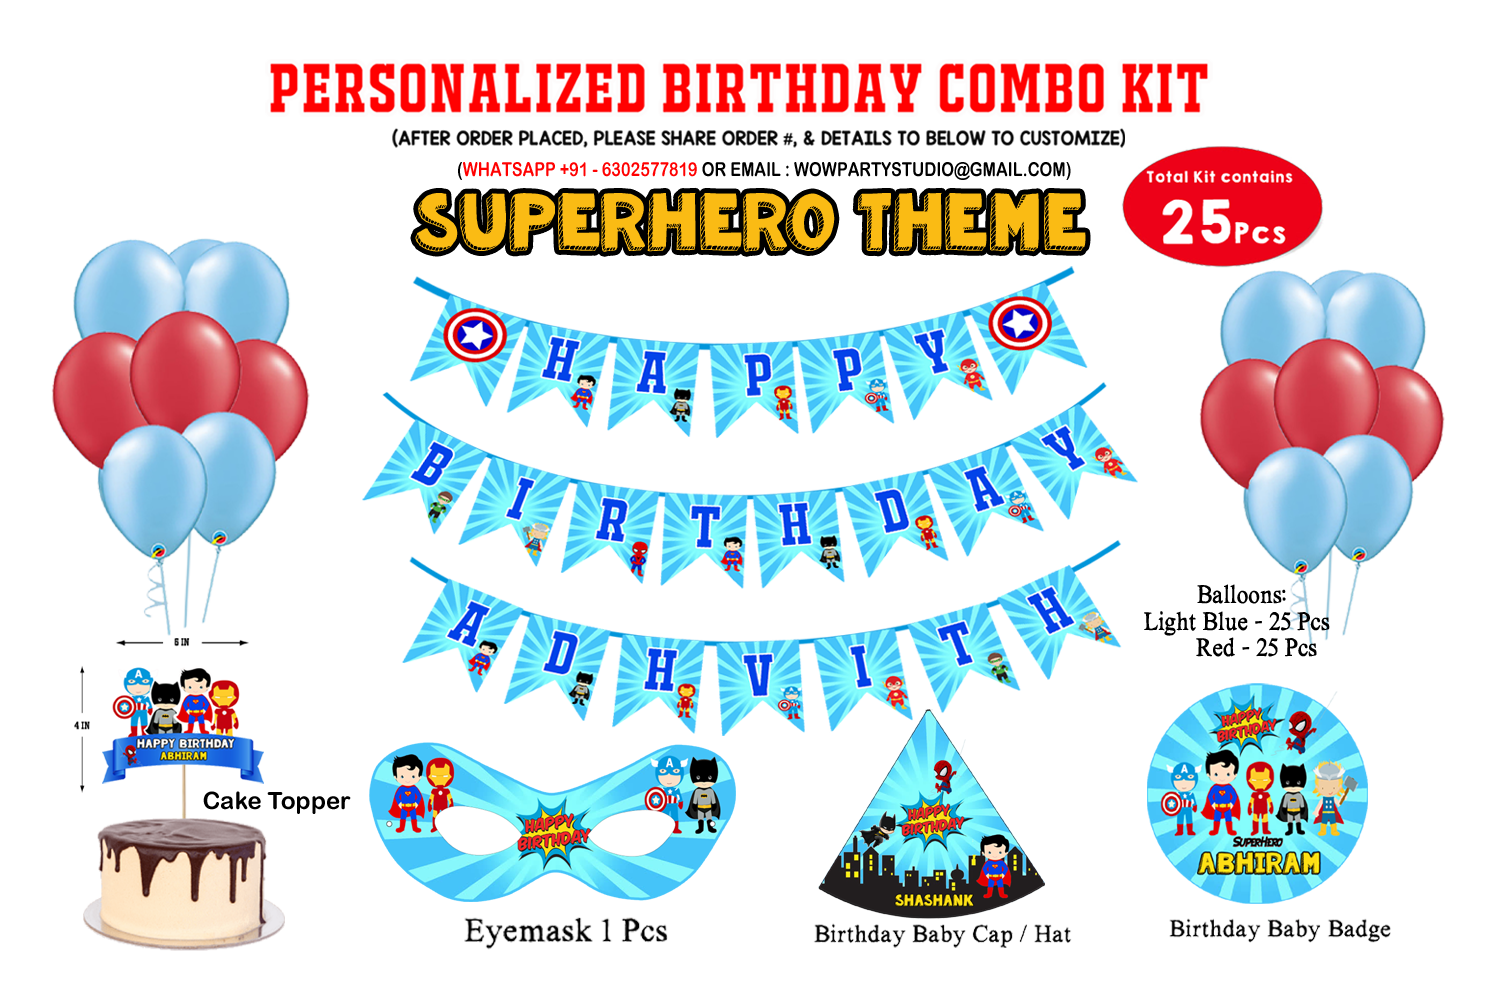 Super Hero Theme - Combo Kit 25Pcs